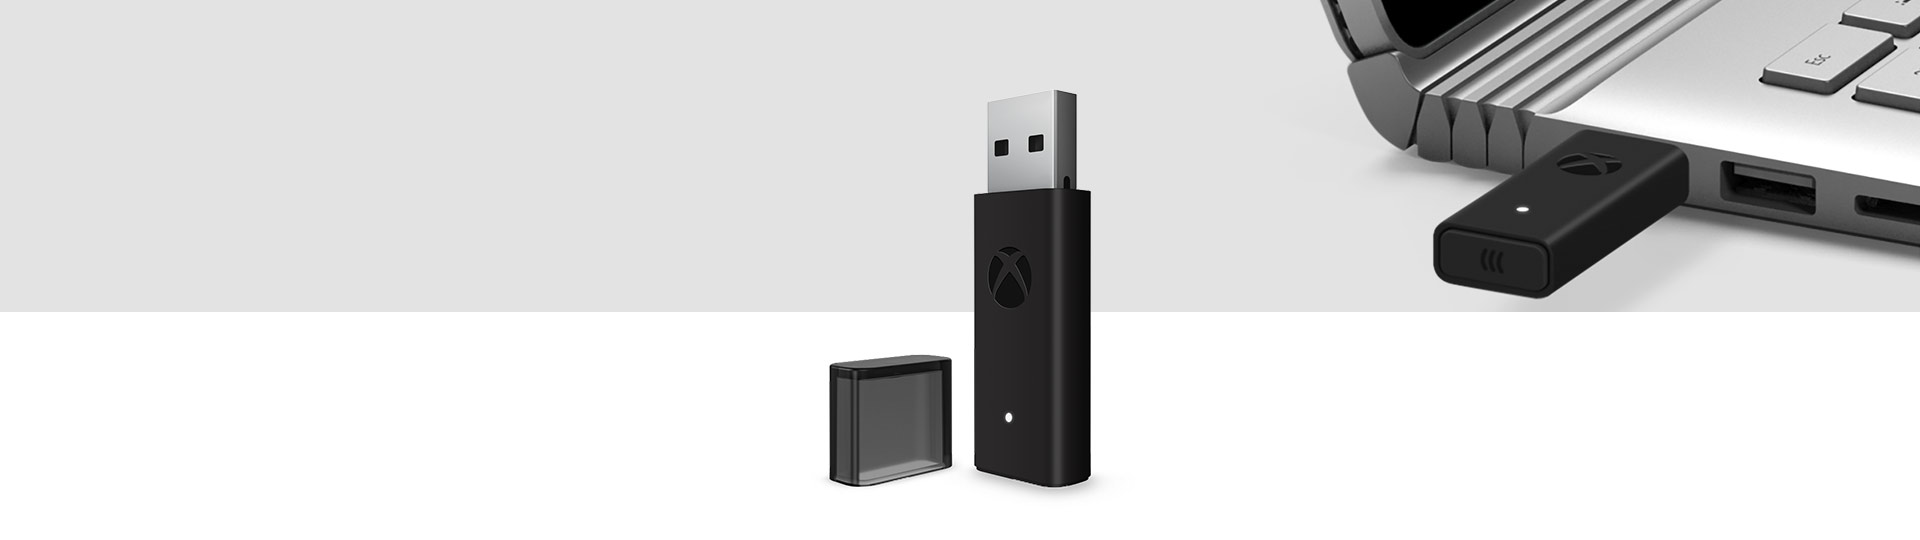 Adaptér pro bezdrátový ovladač Xbox pro Windows 10 s adaptérem pro bezdrátový ovladač Xbox zapojeným do USB portu na notebooku v pozadí